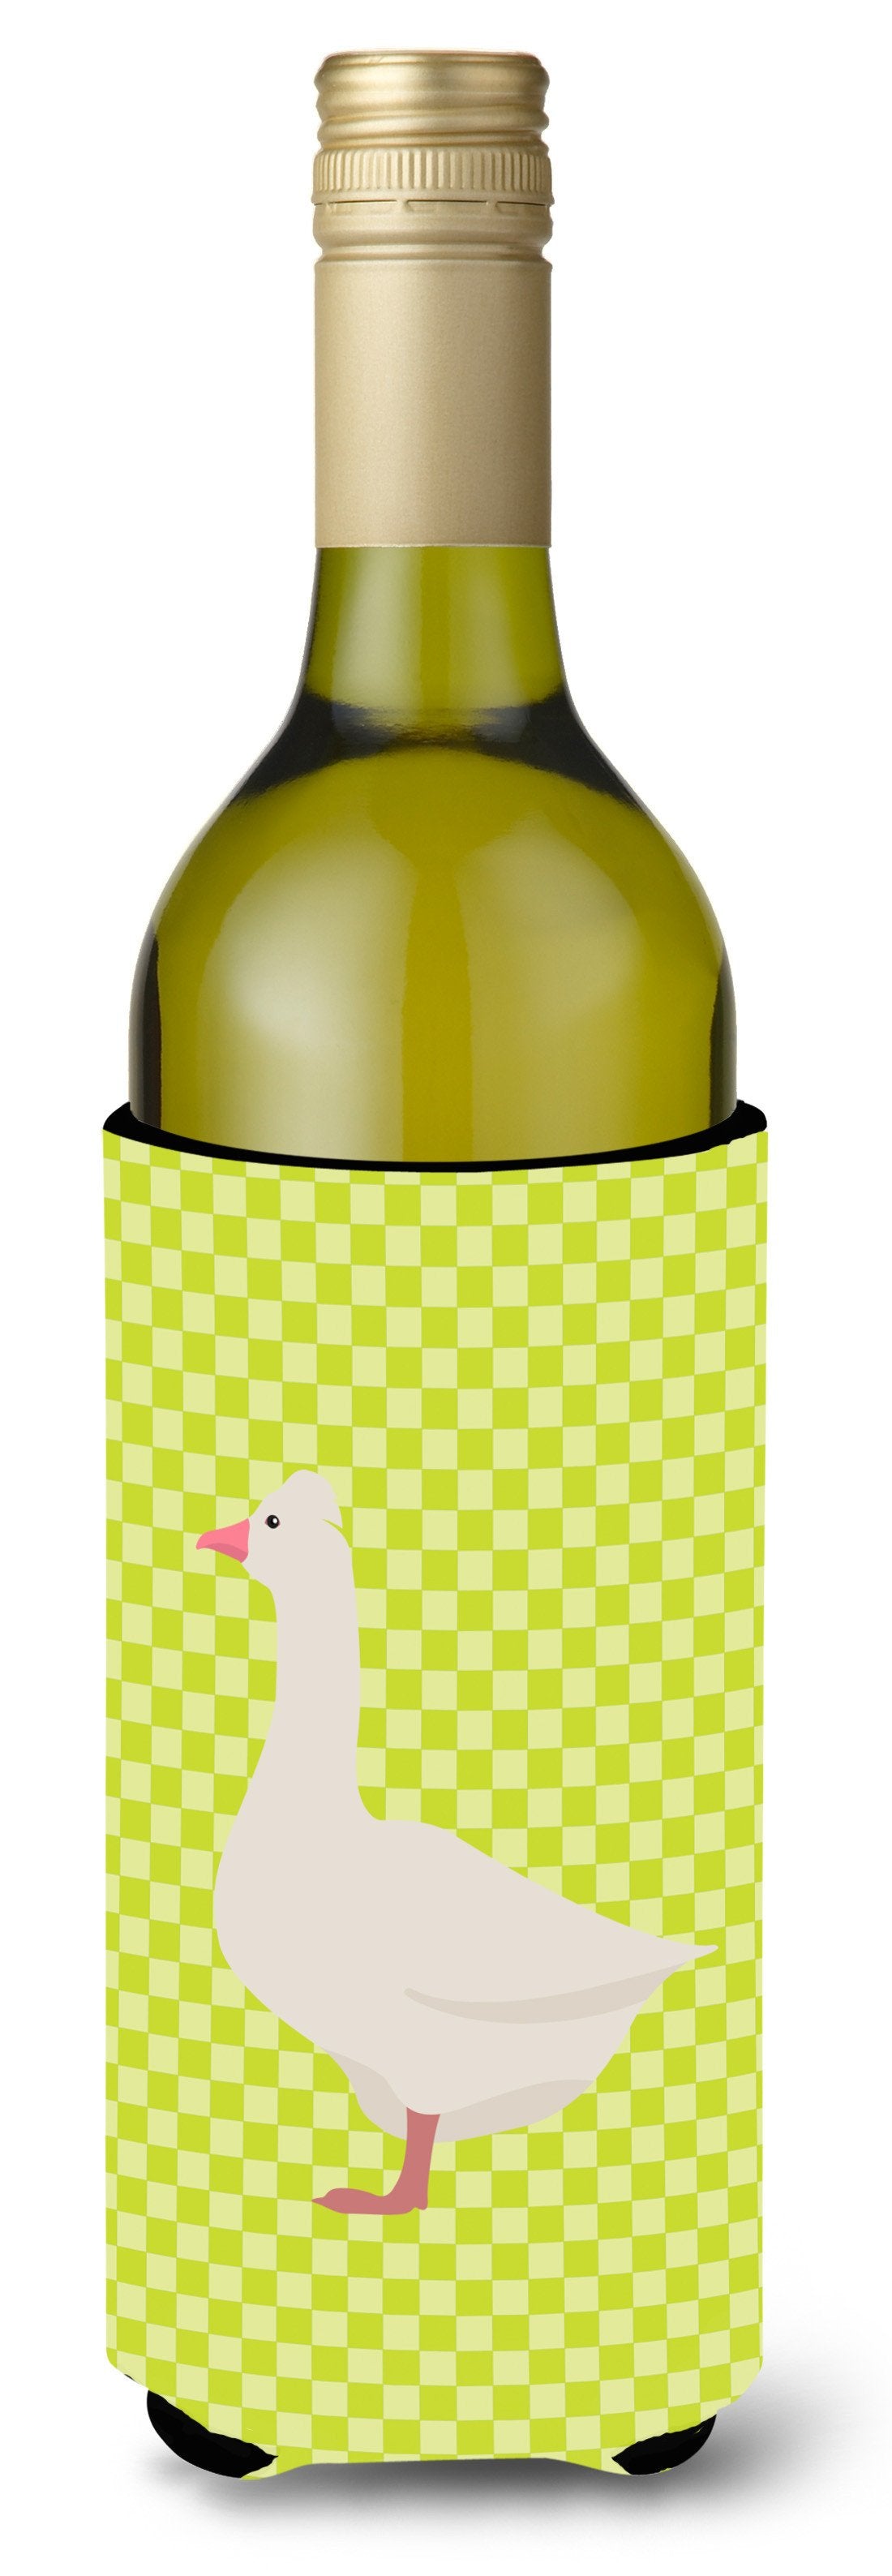 Roman Goose Green Wine Bottle Beverge Insulator Hugger BB7724LITERK by Caroline's Treasures